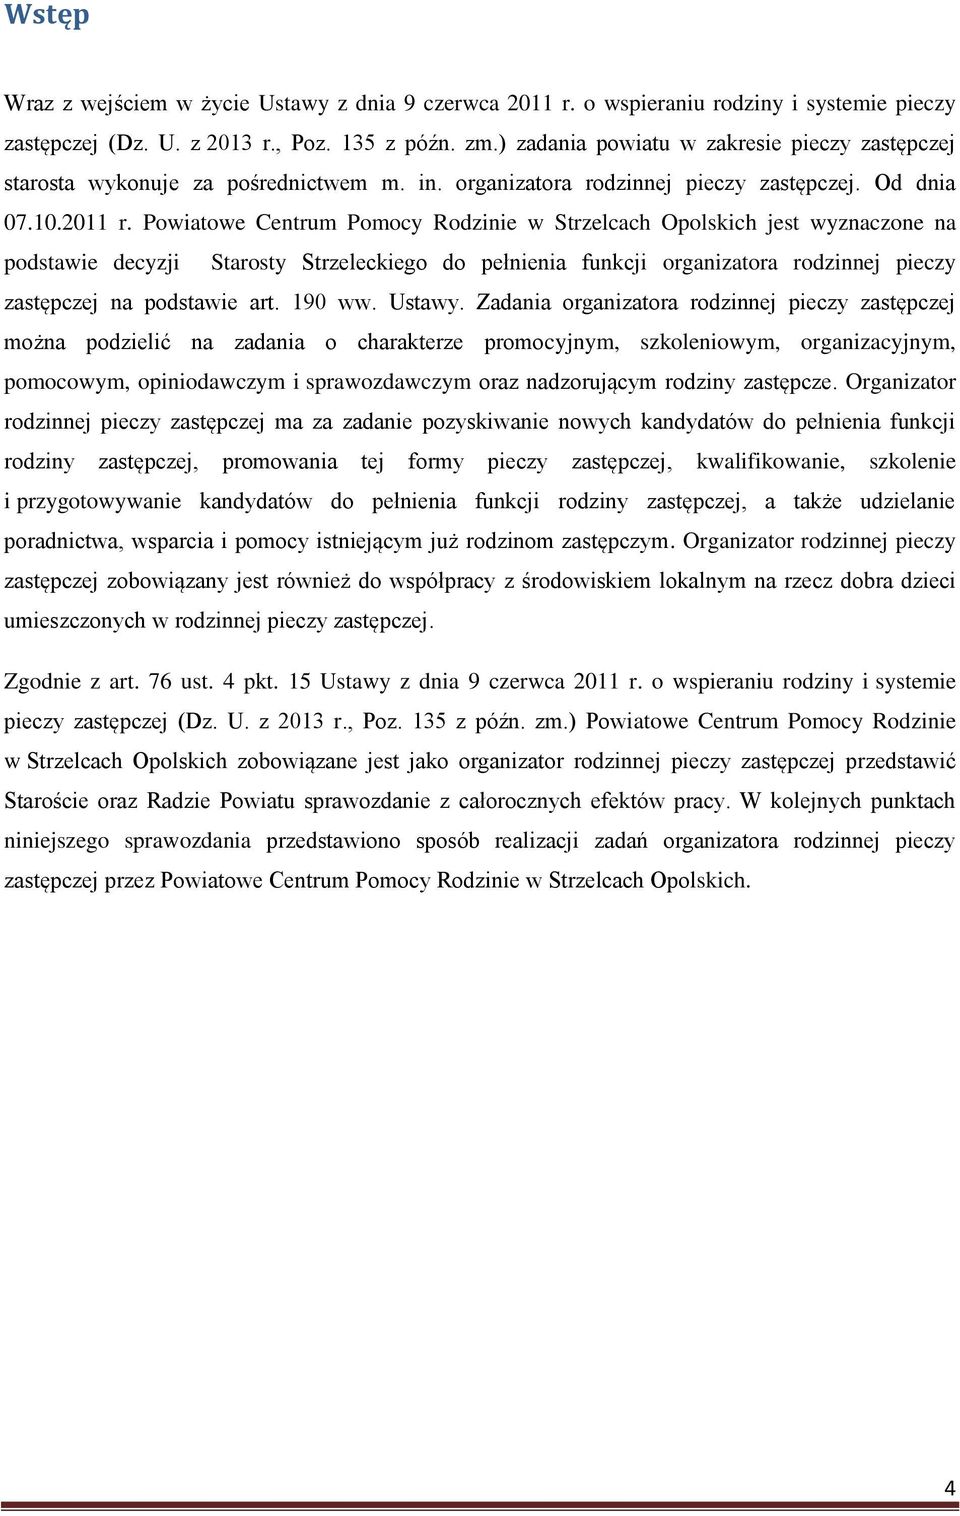 Powiatowe Centrum Pomocy Rodzinie w Strzelcach Opolskich jest wyznaczone na podstawie decyzji Starosty Strzeleckiego do pełnienia funkcji organizatora rodzinnej pieczy zastępczej na podstawie art.